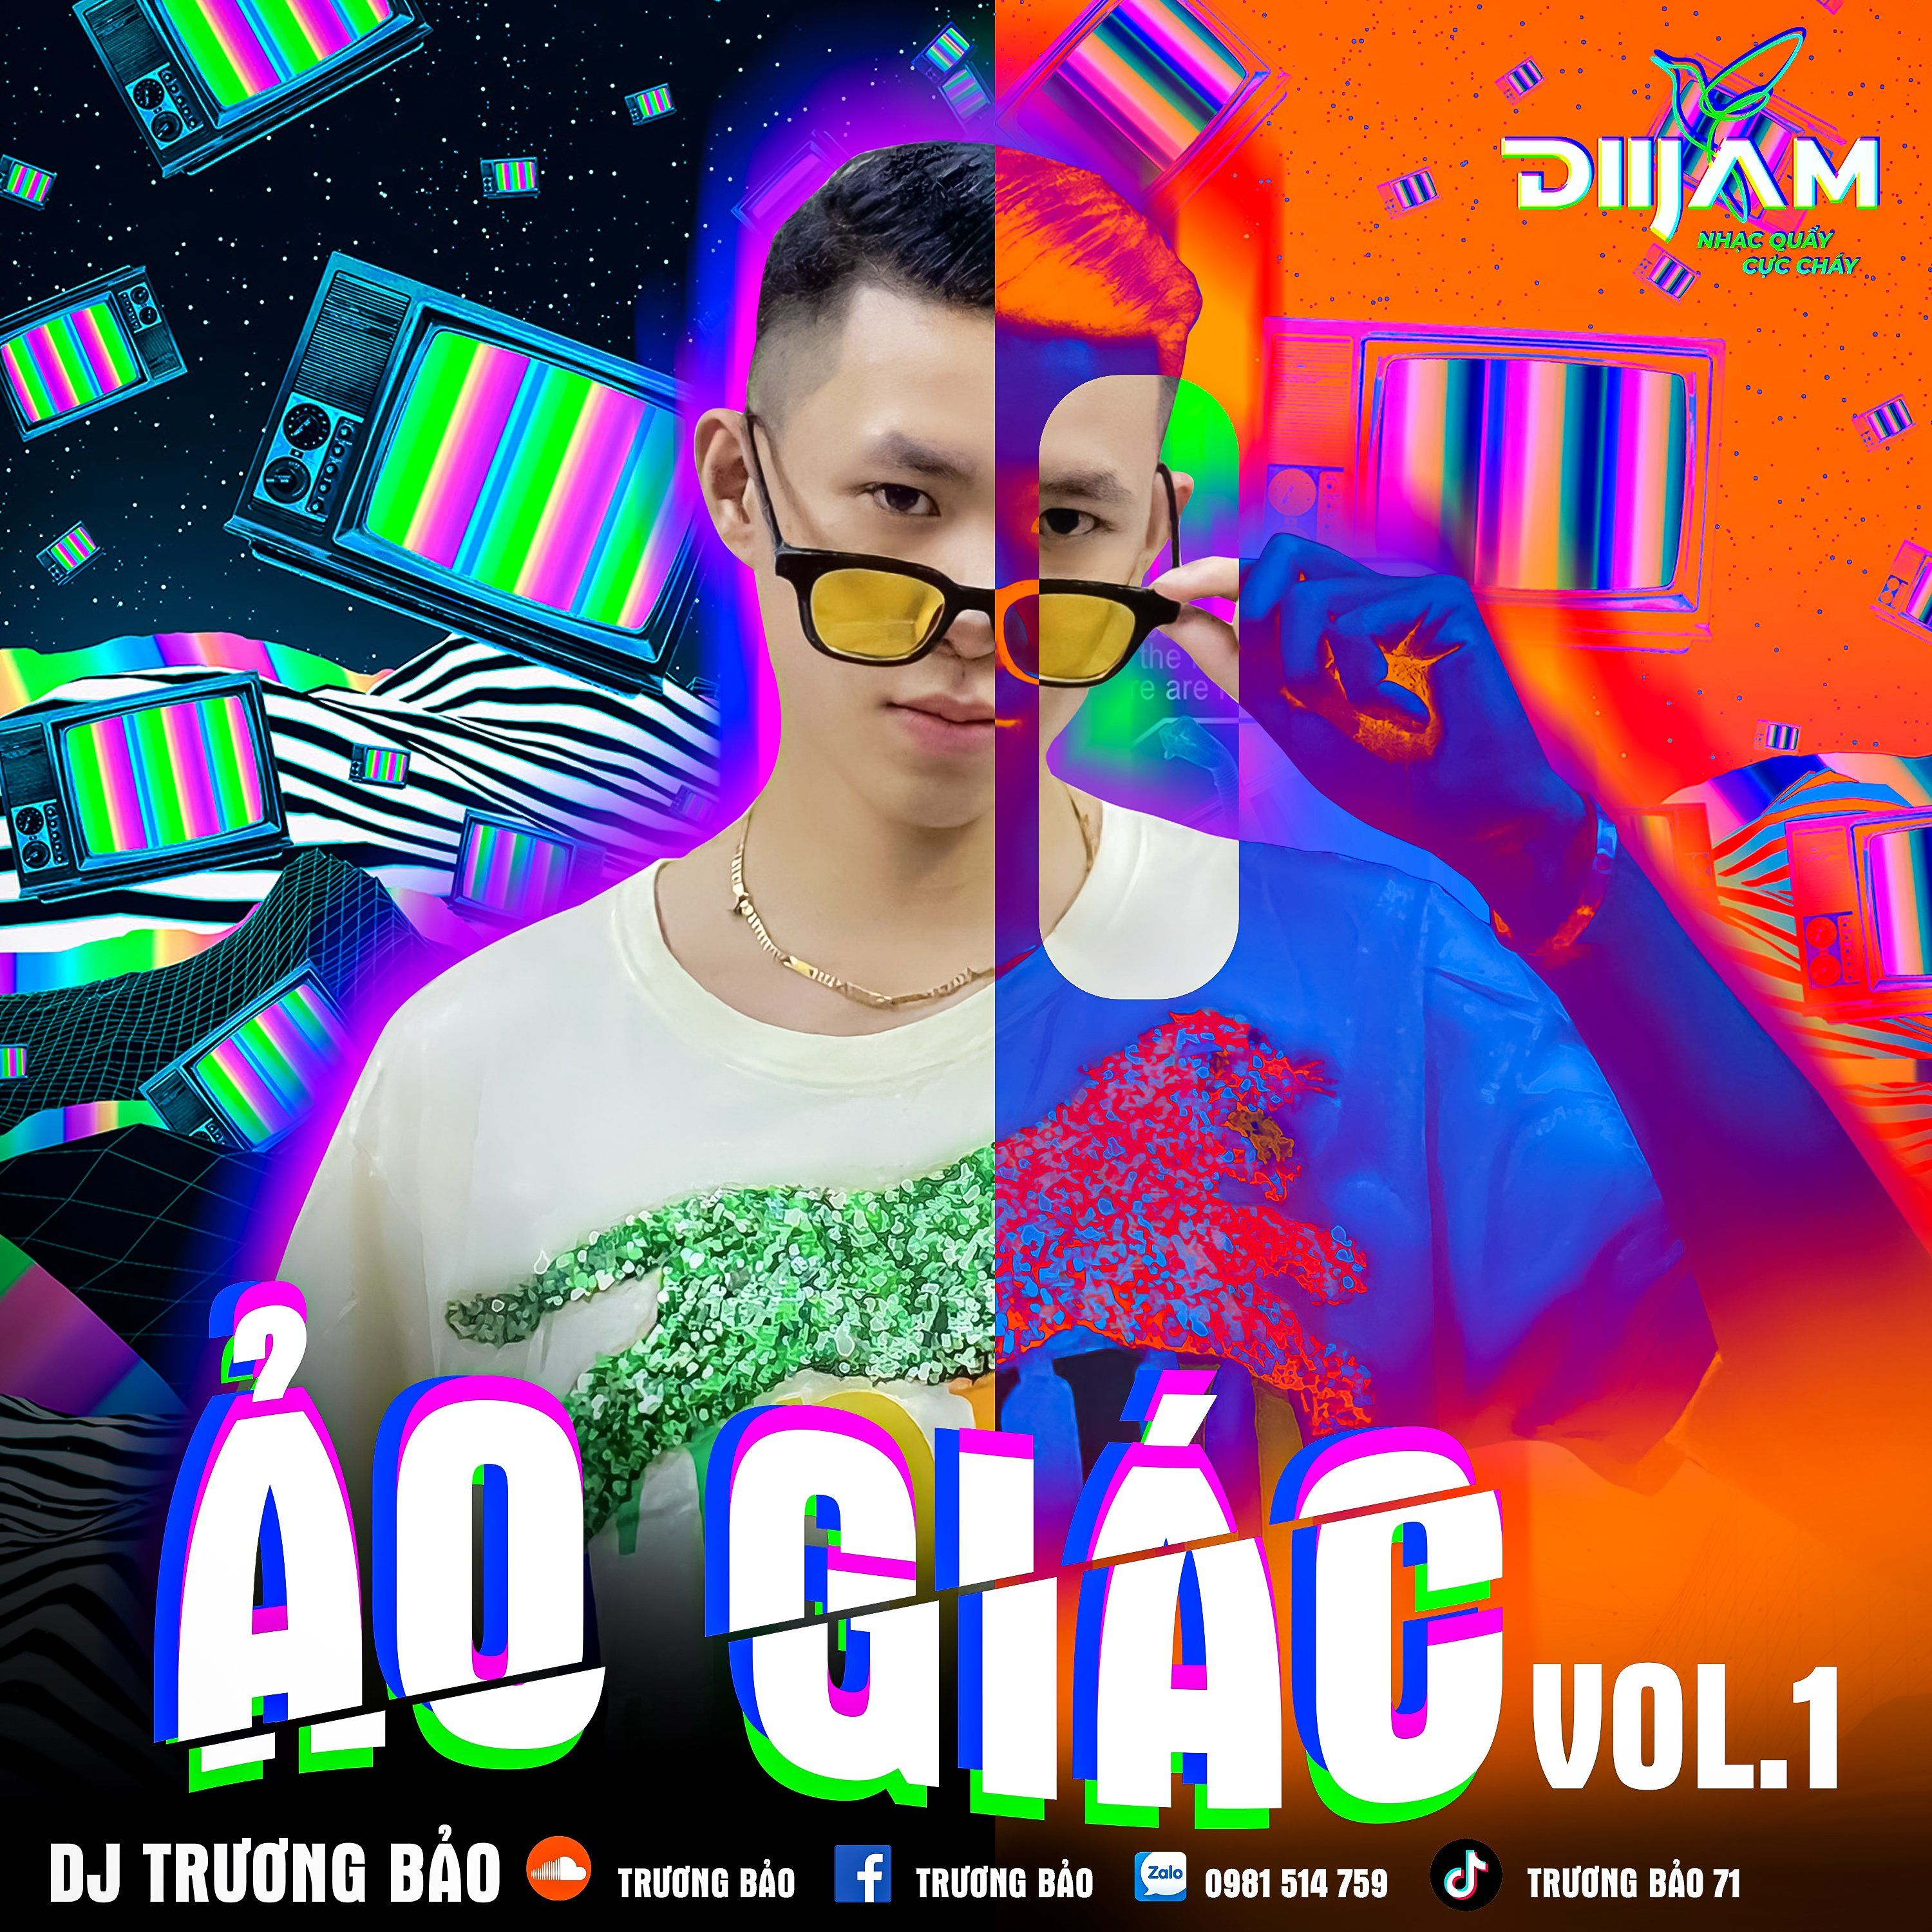 பதிவிறக்க Tamil Ảo Giác Vol 1 - DJ Trương Bảo (Nonstop Diijam)